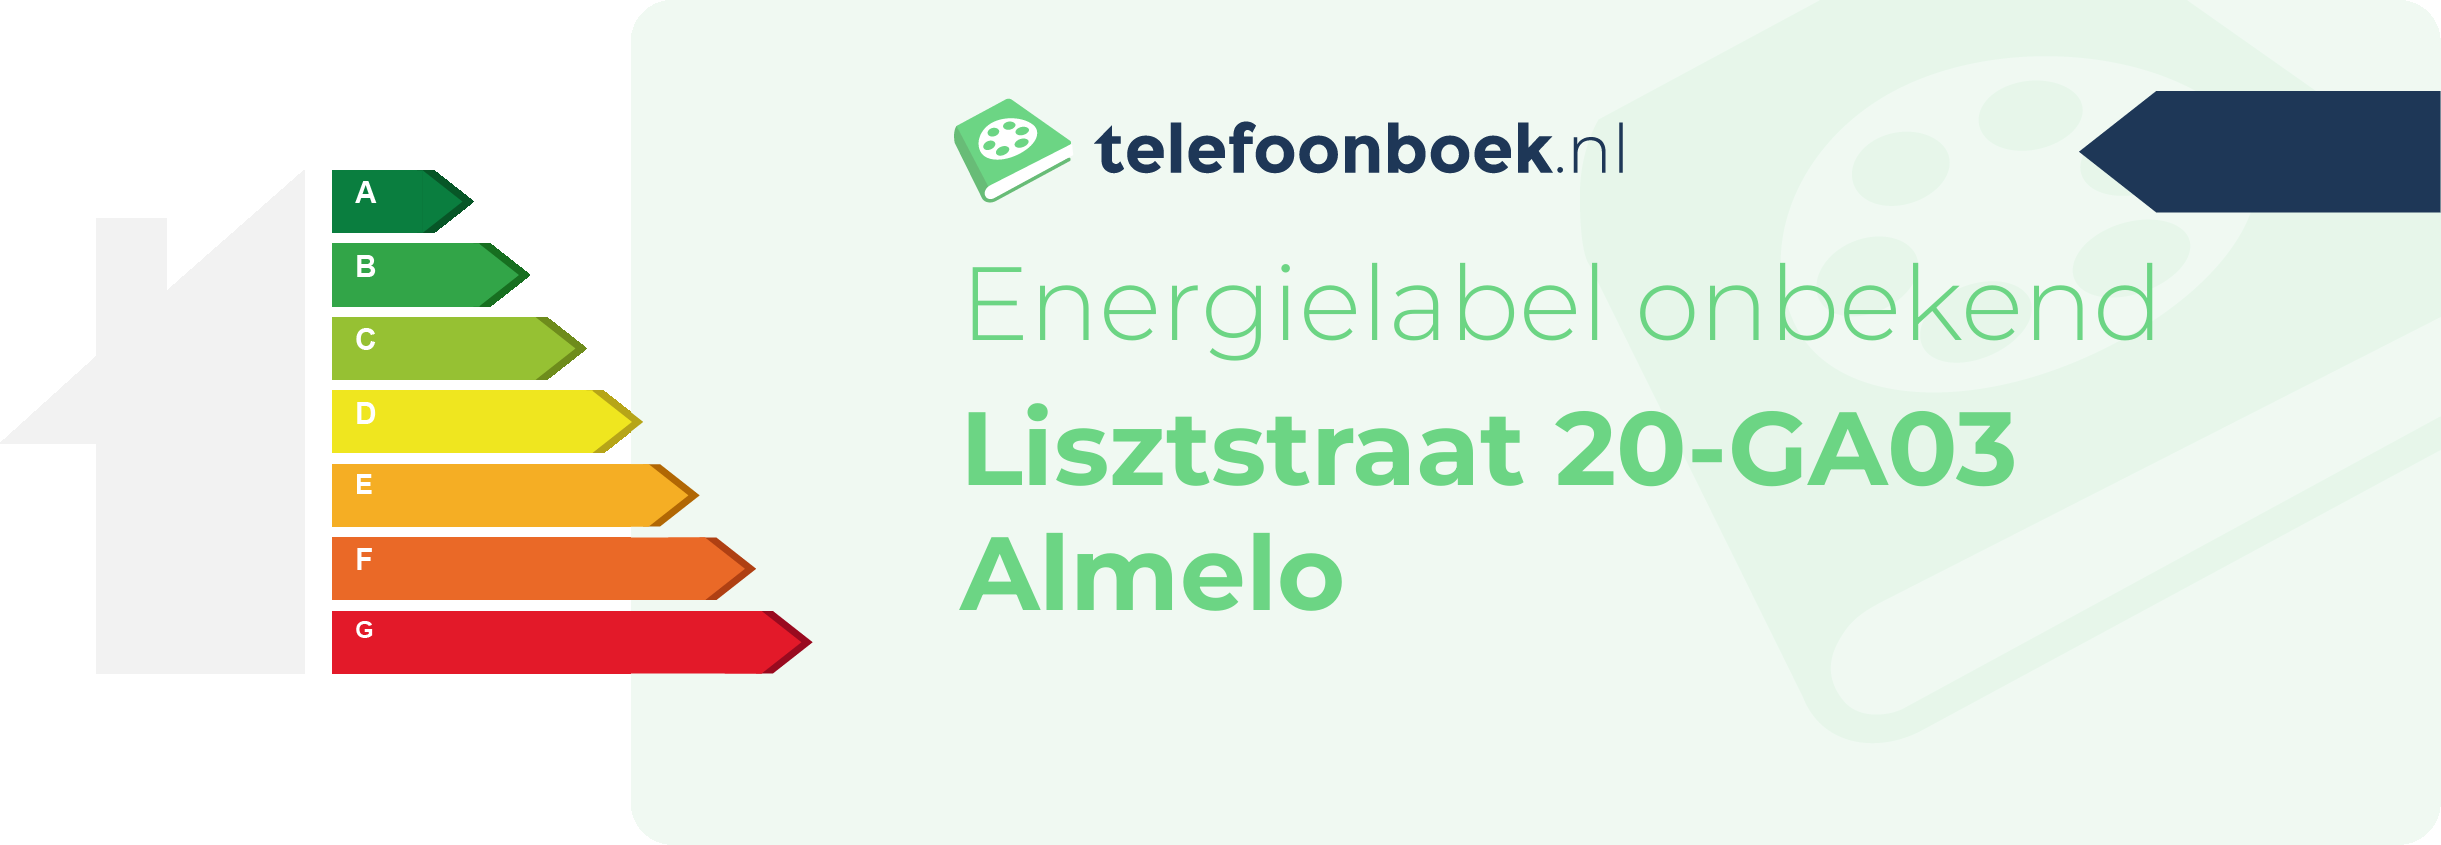 Energielabel Lisztstraat 20-GA03 Almelo